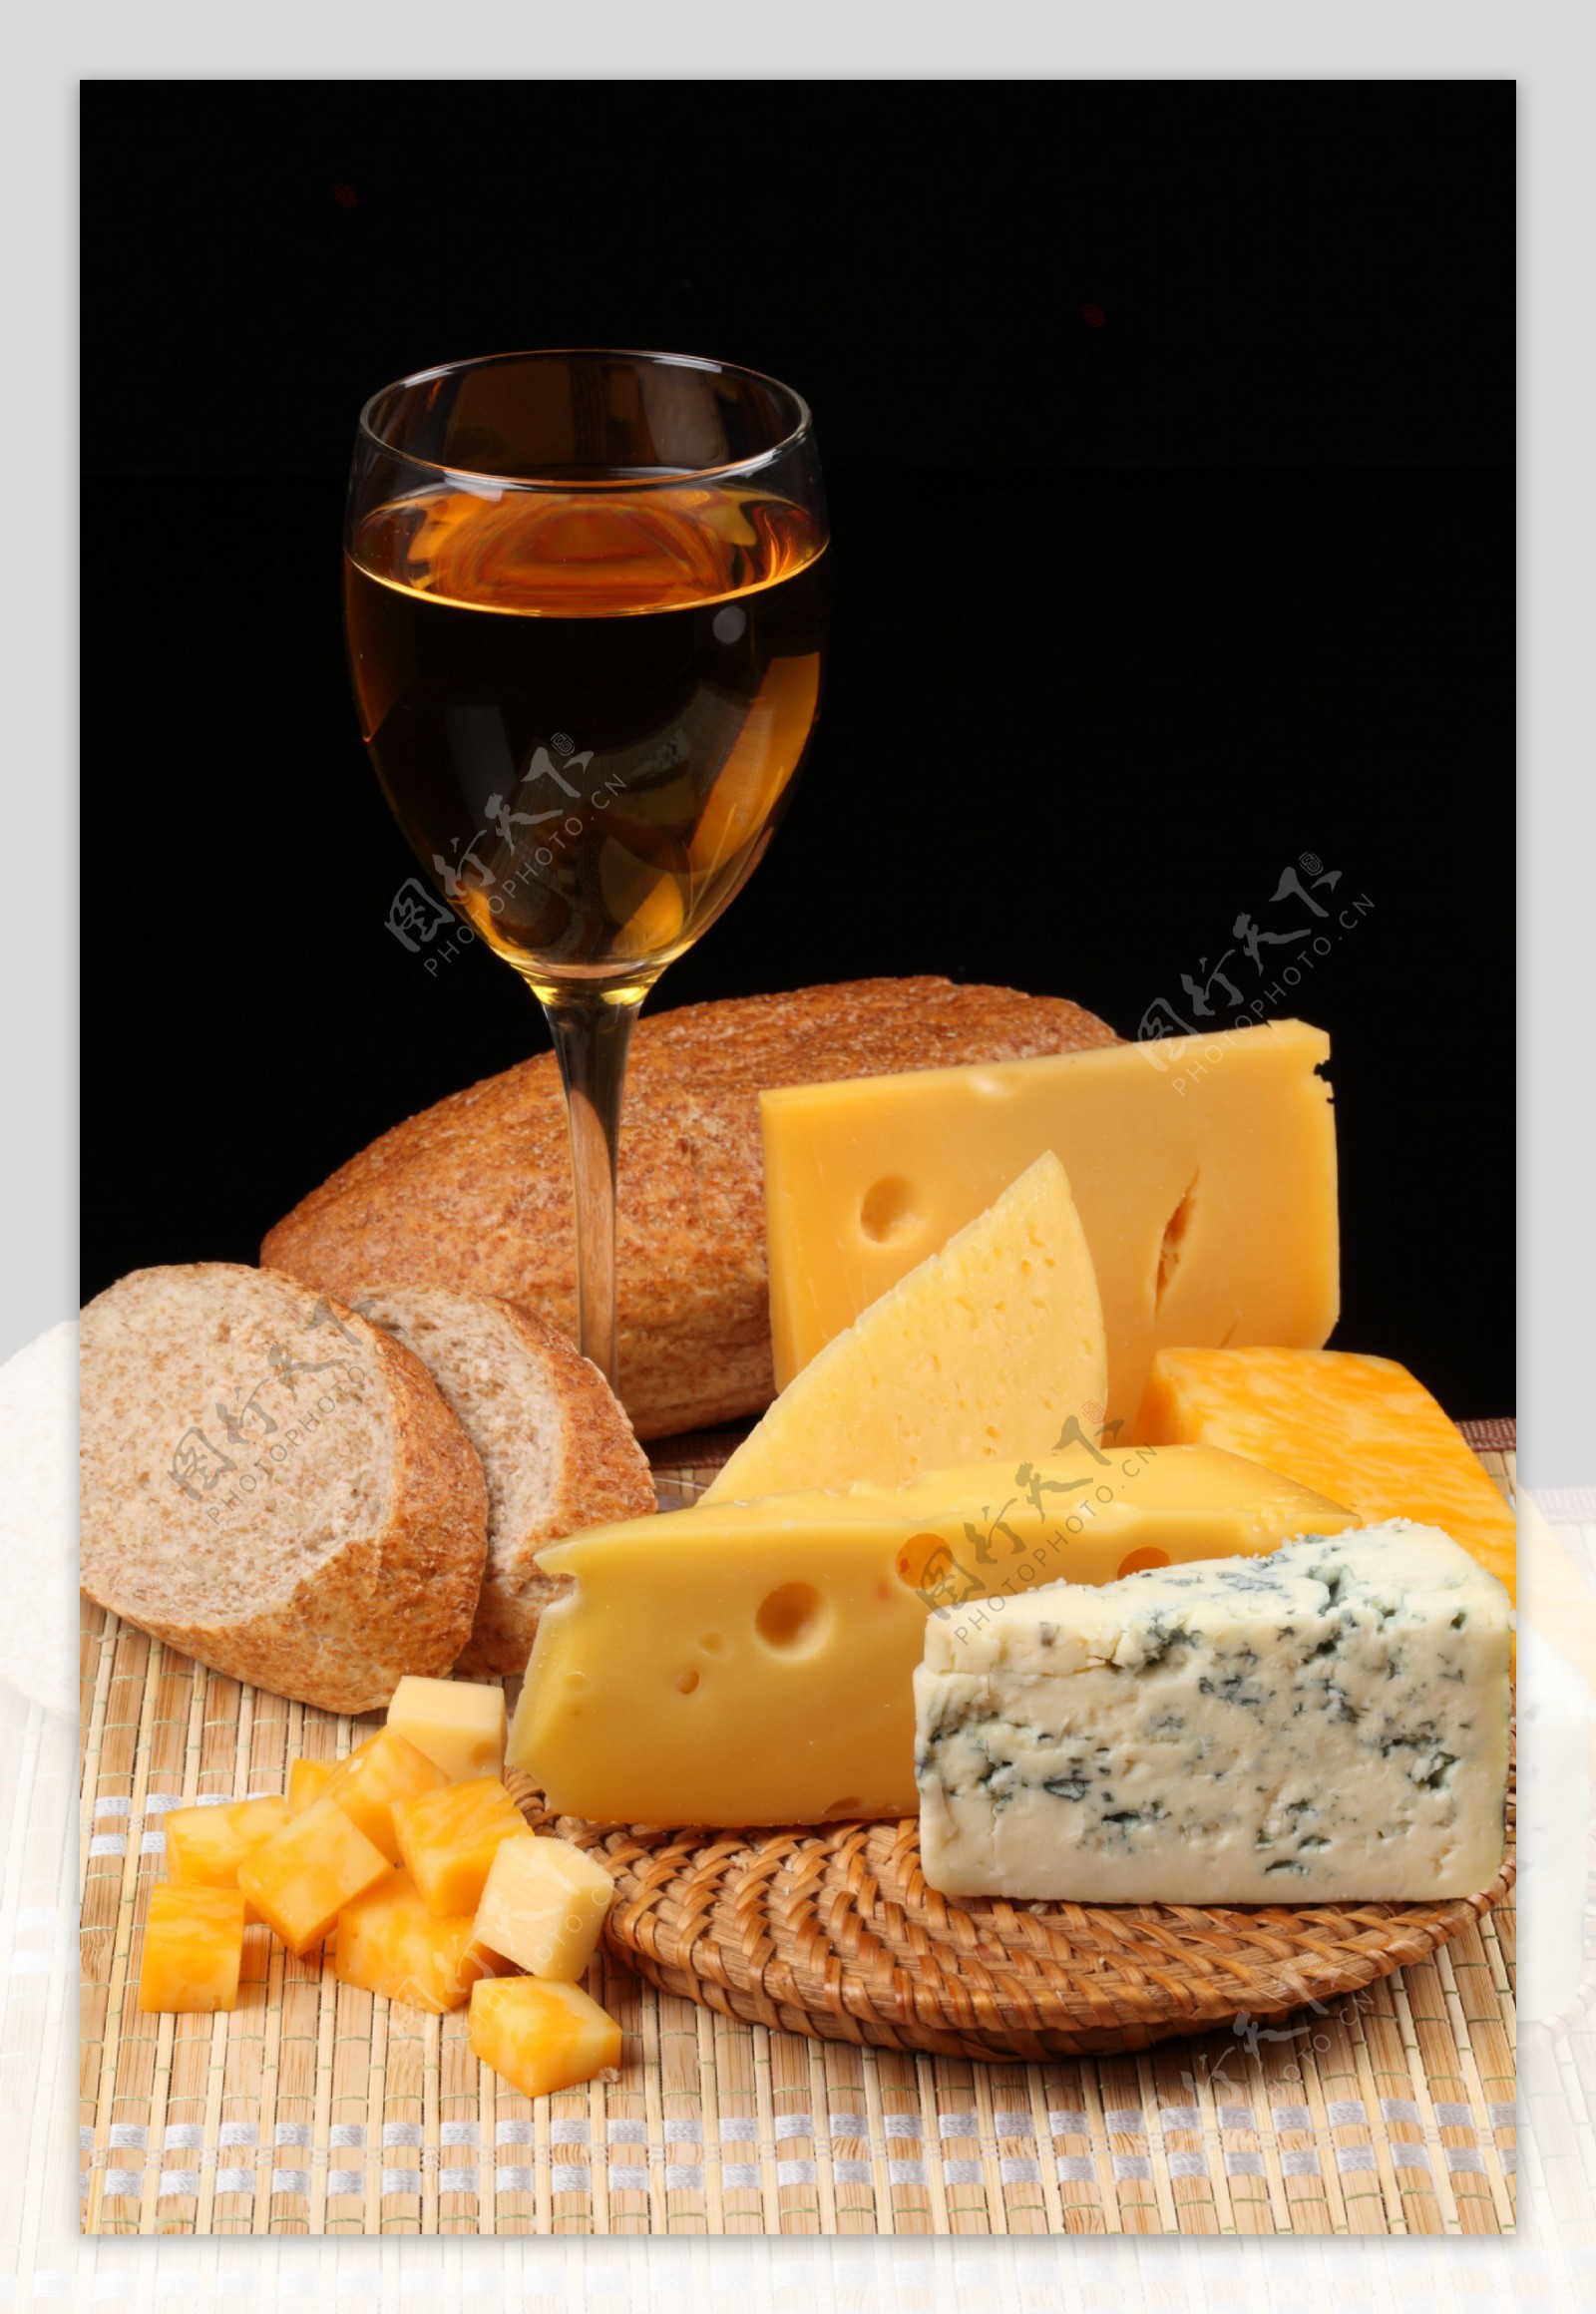 奶酪美酒图片